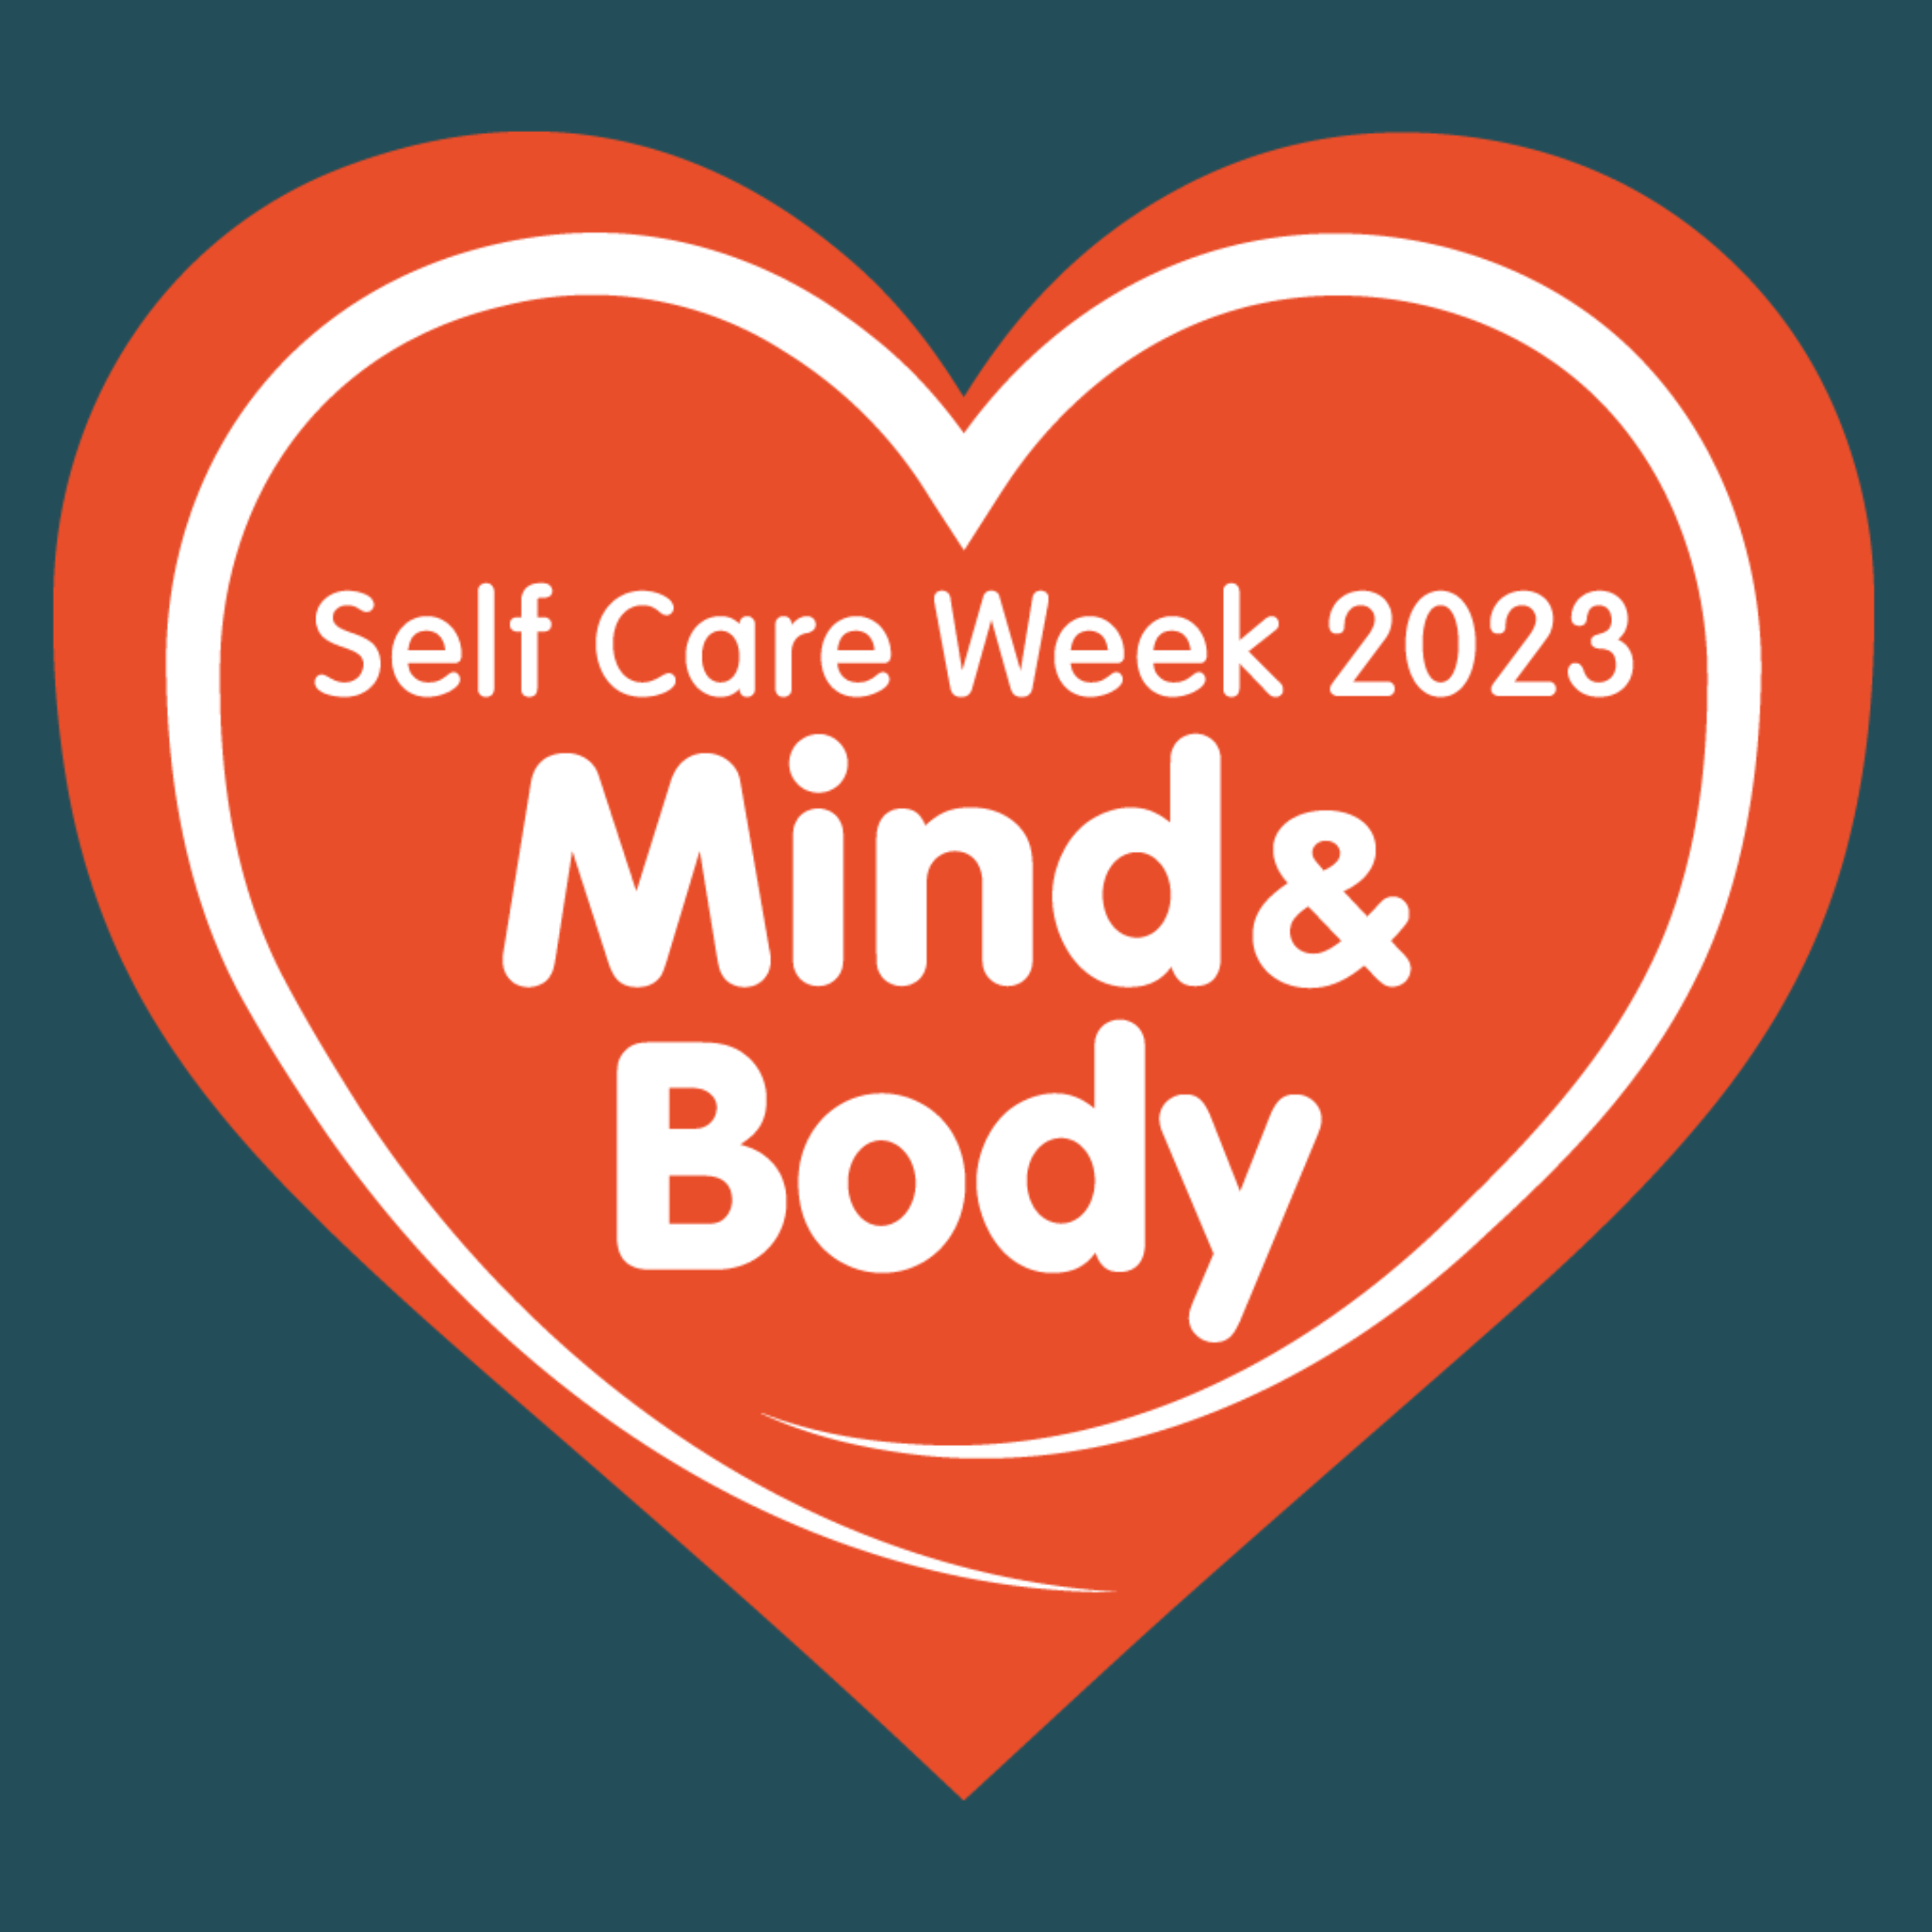 1000s participate in Self-Care Week